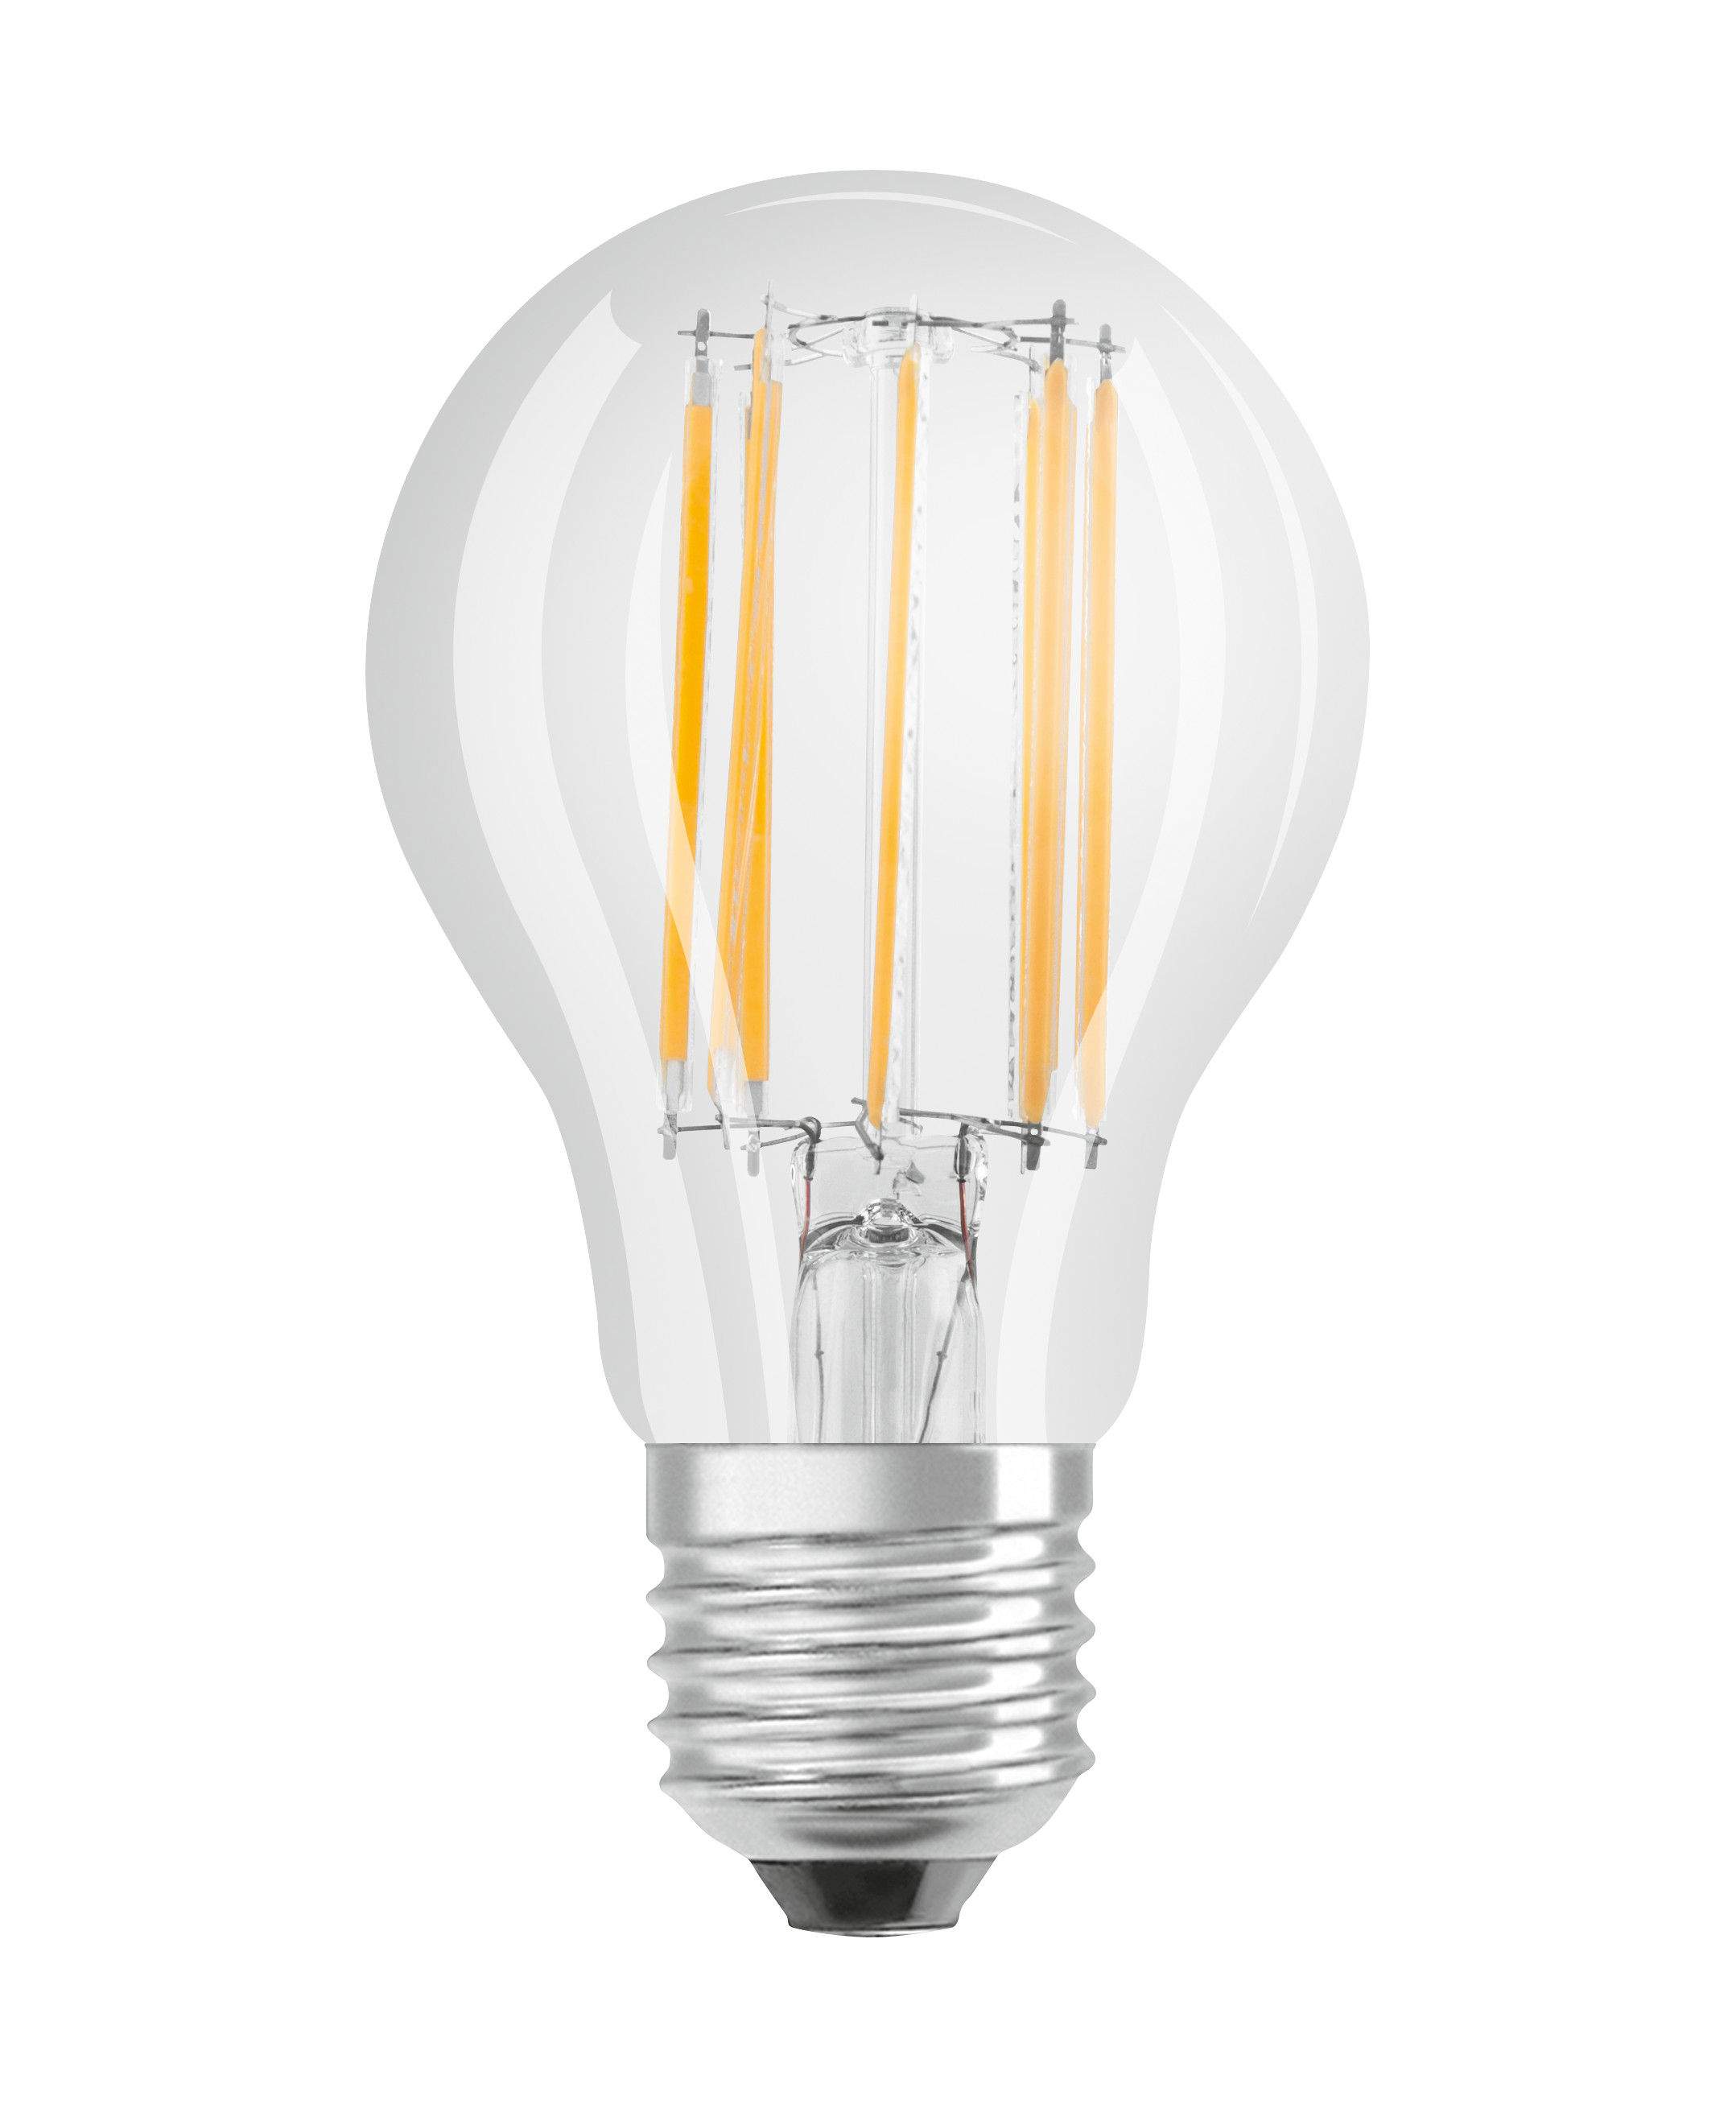 Ampoule LED verre transparent standard E27, 6.5W, blanc froid.